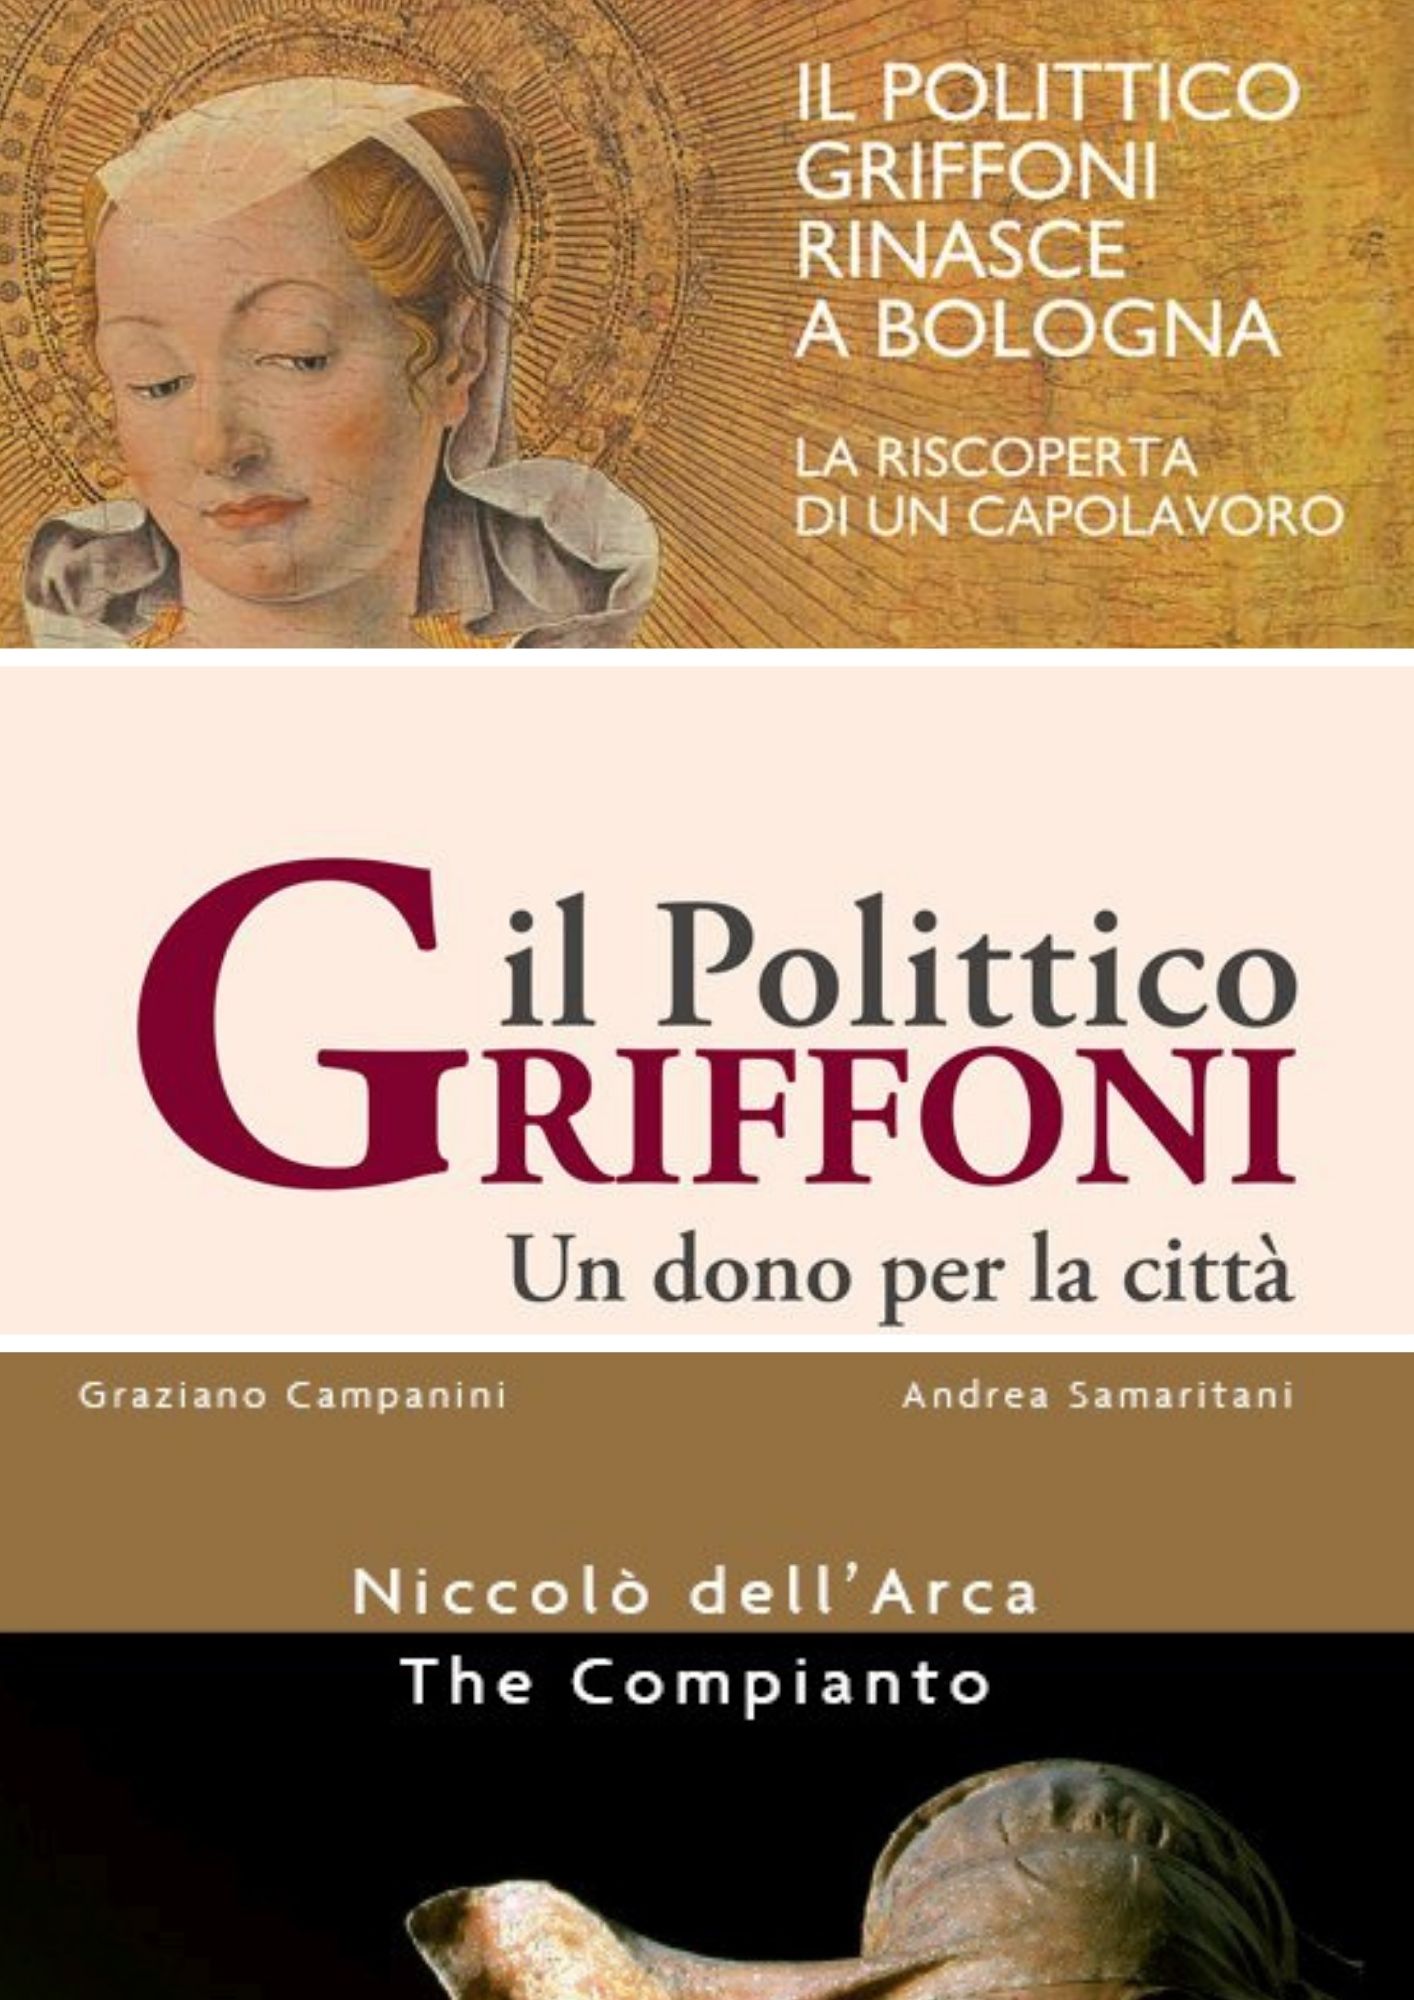 MDC_Pacchetto 16 - Bologna University Press